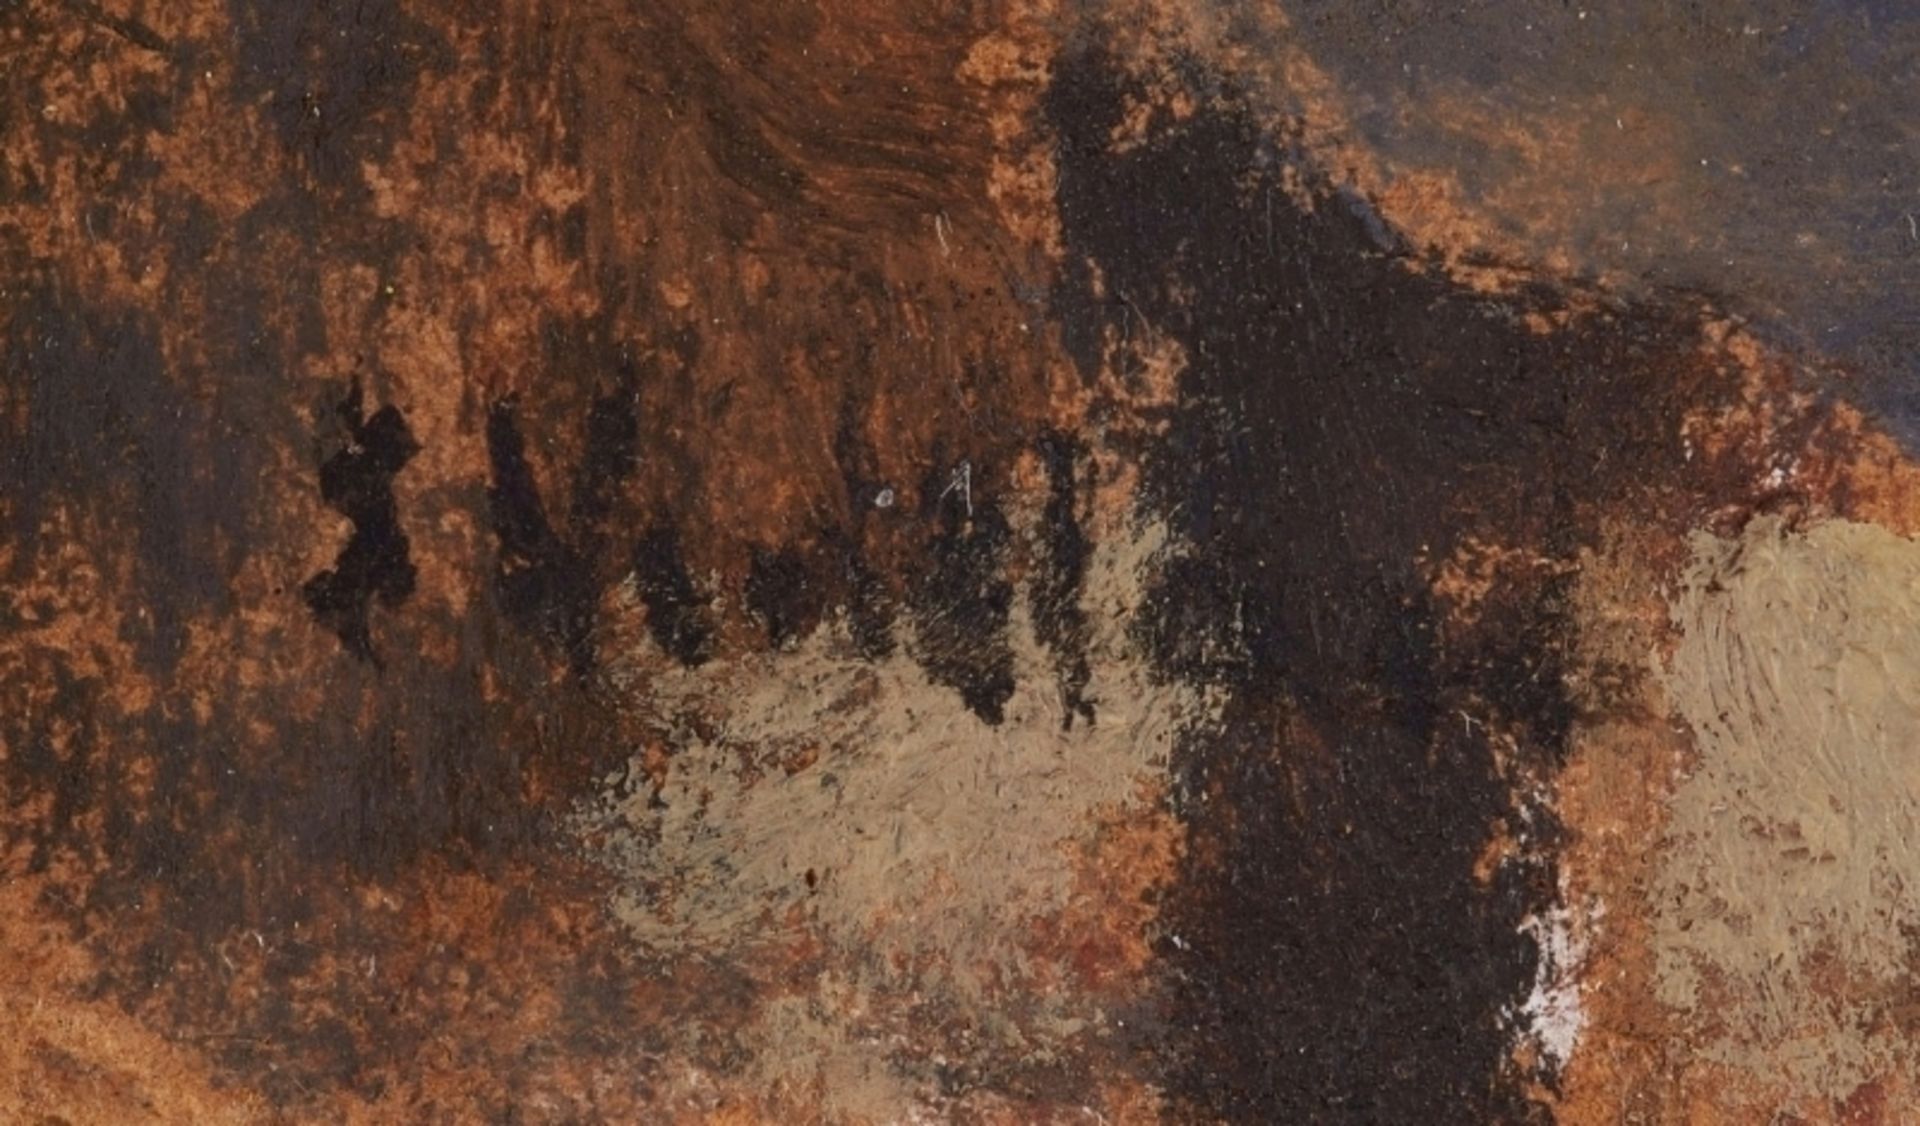 Vuillard, Edouard - Image 25 of 51